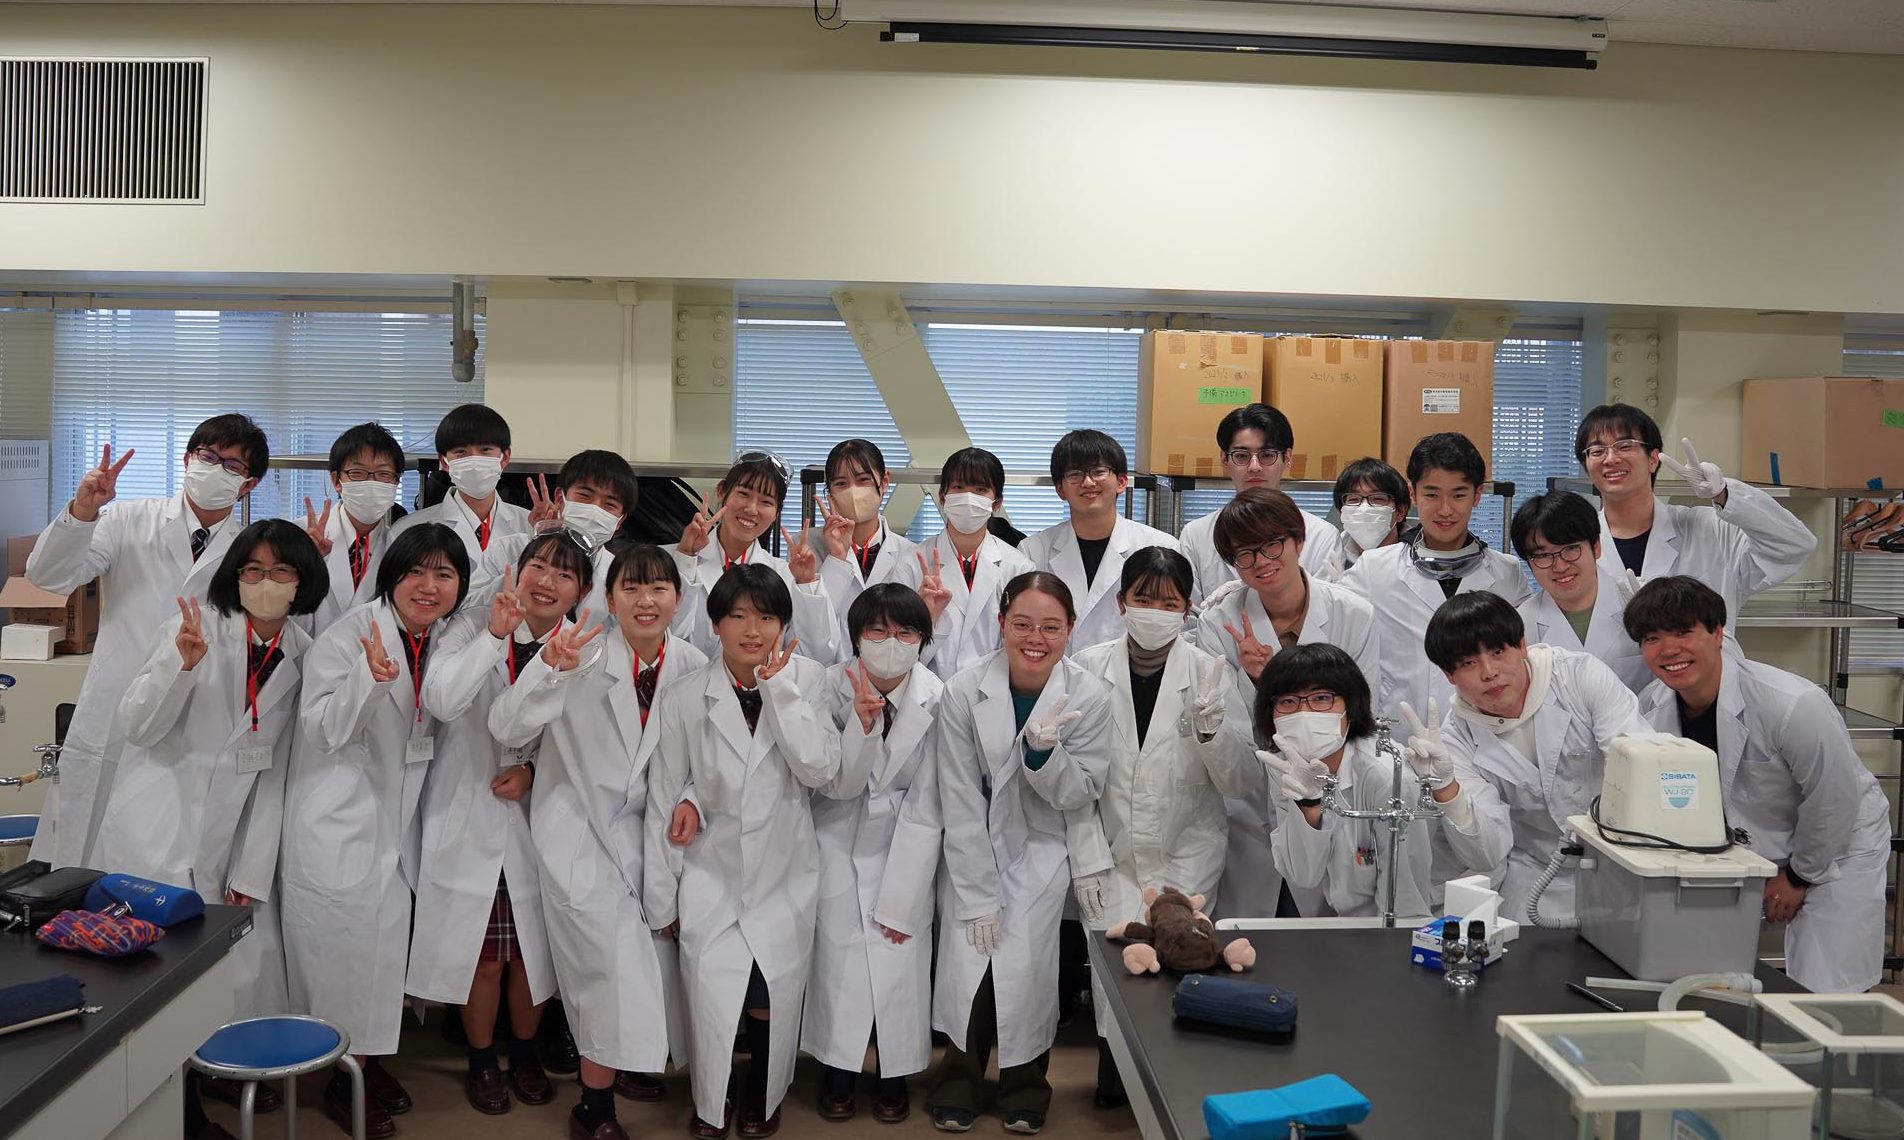 長崎大学全学微積サークルが創成館高校生徒と化学を楽しむ企画を開催